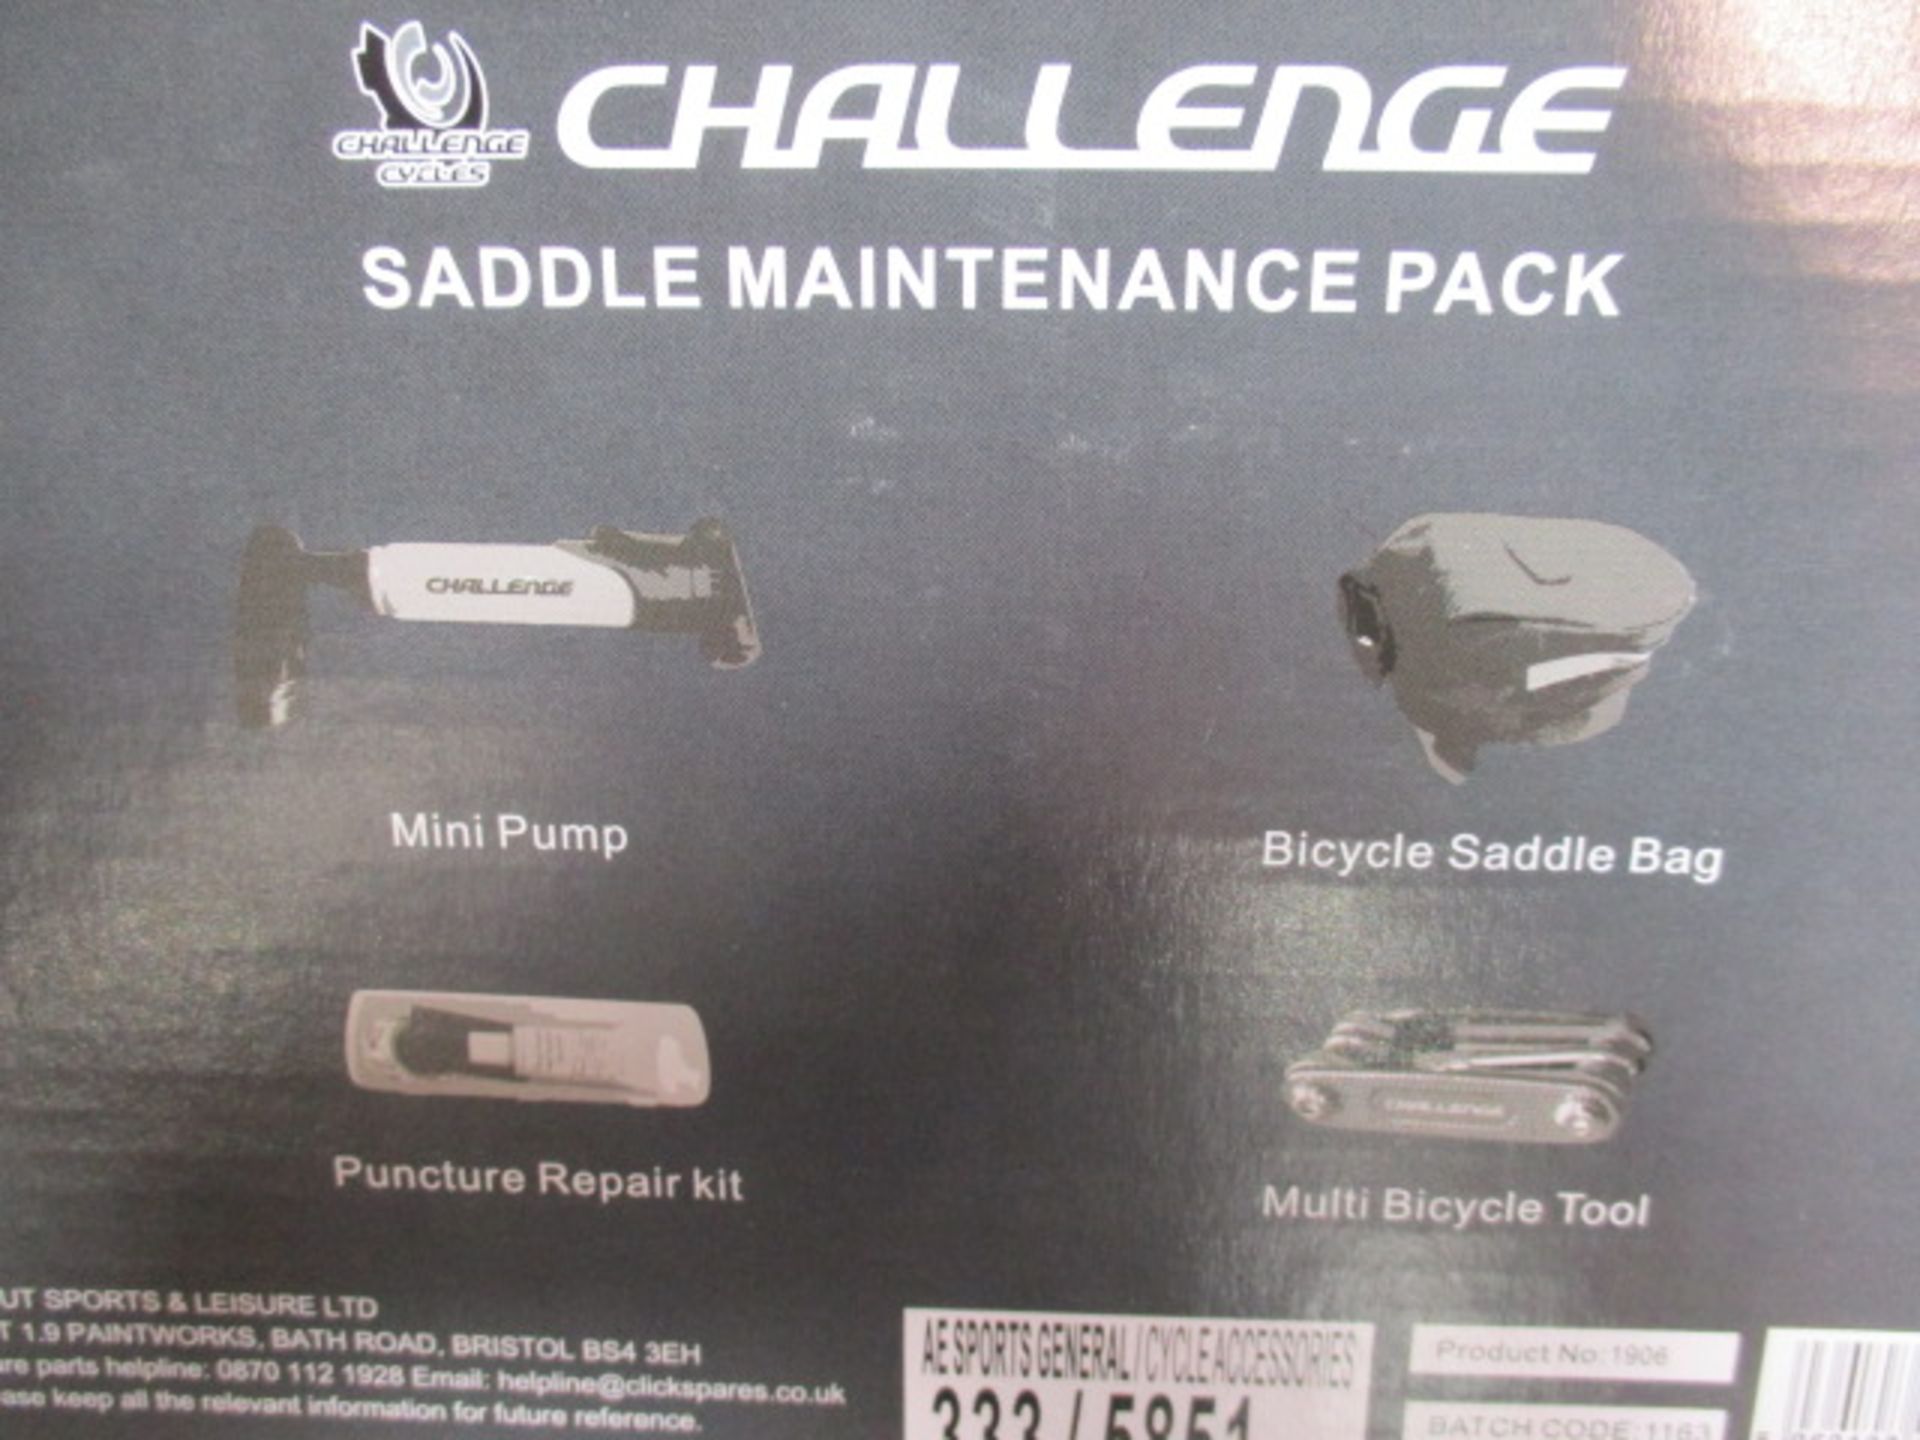 50pcs of brand new sealed Saddle Maintenance Pack